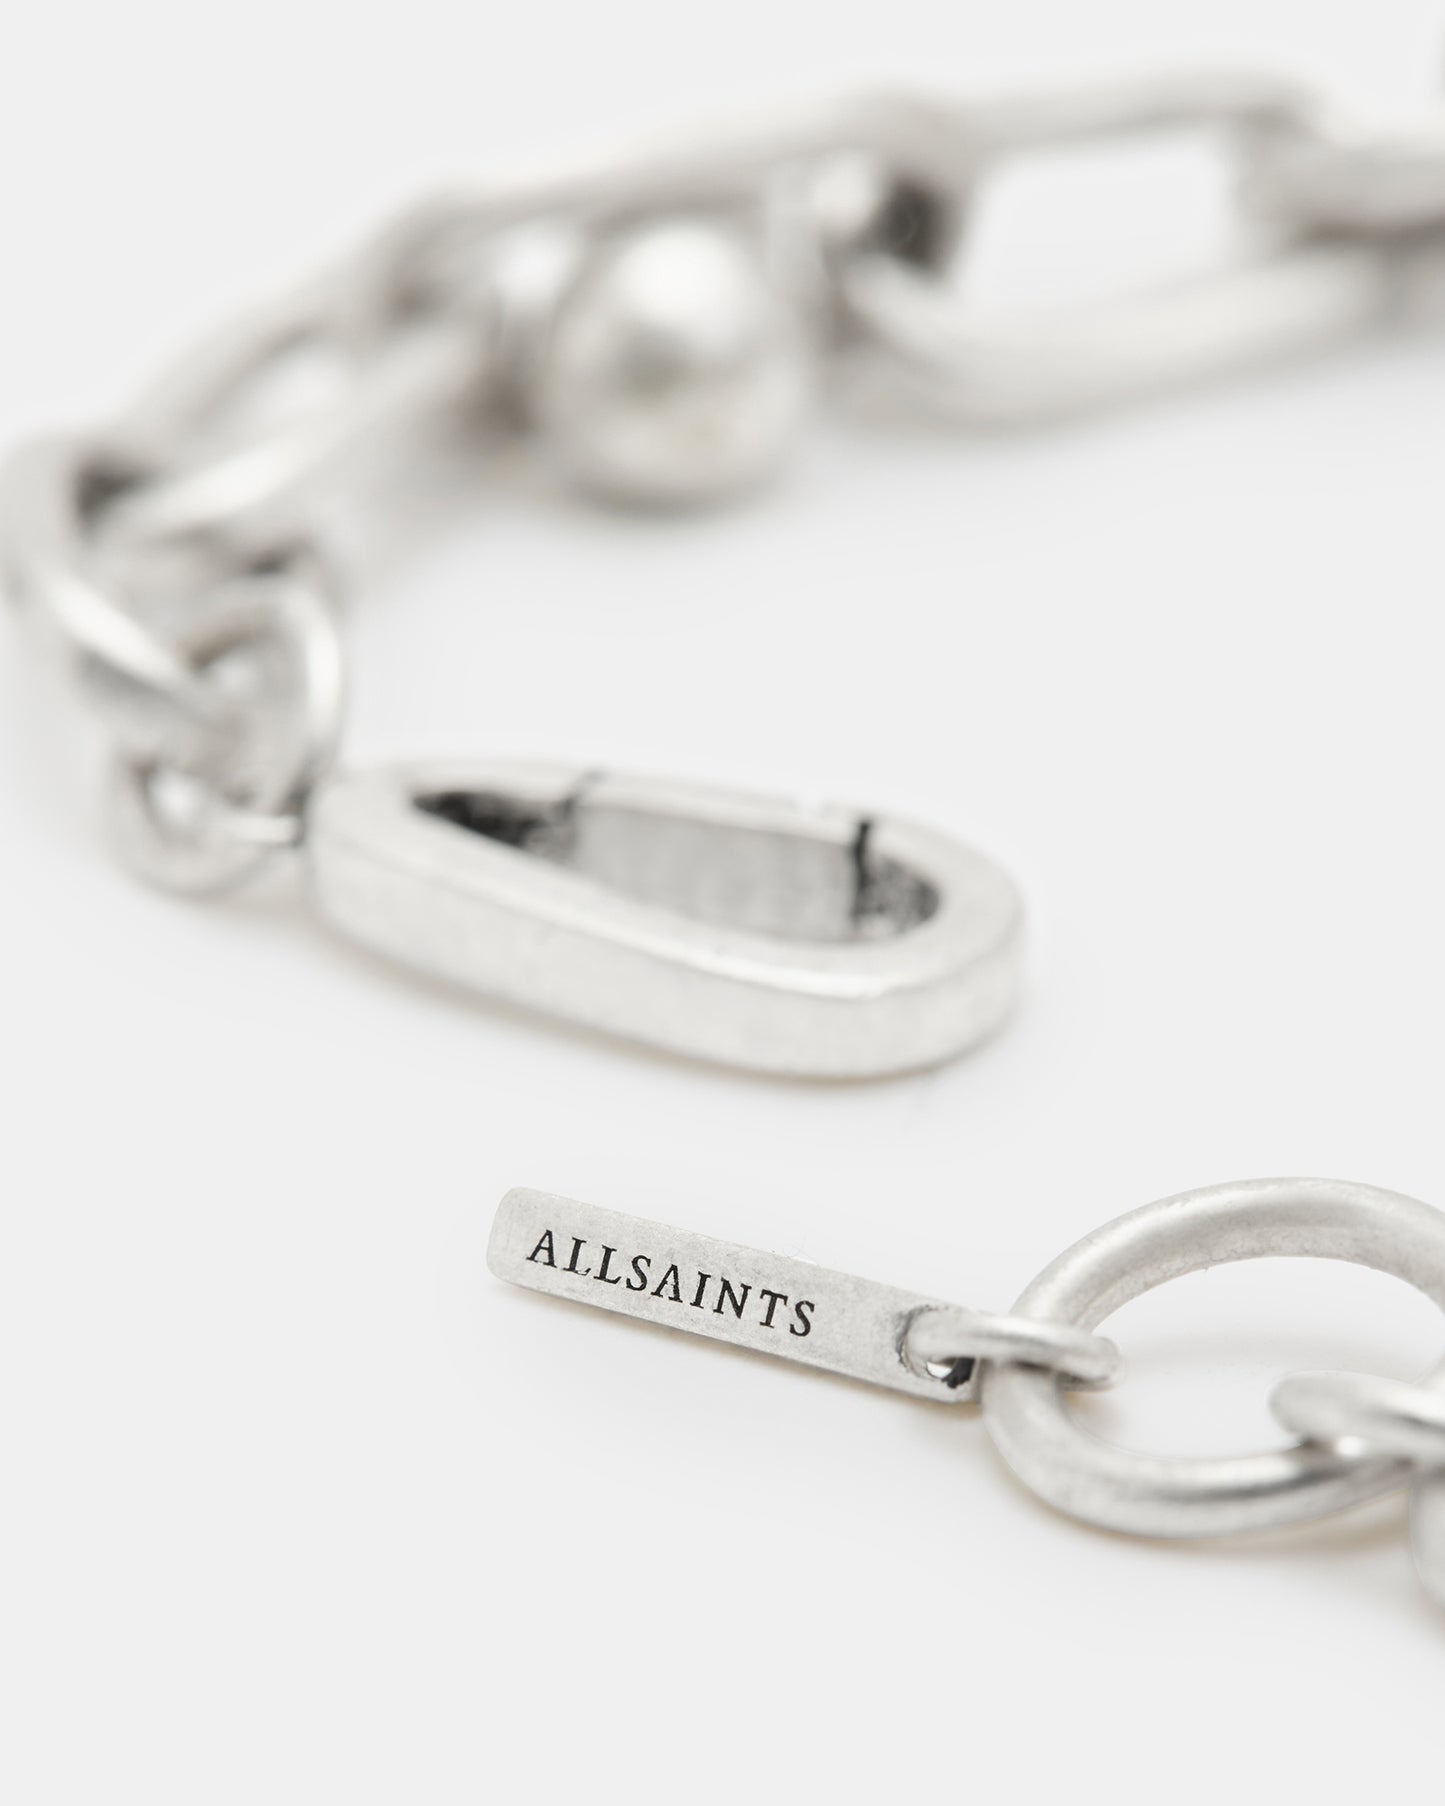 Brendon Chain Bracelet